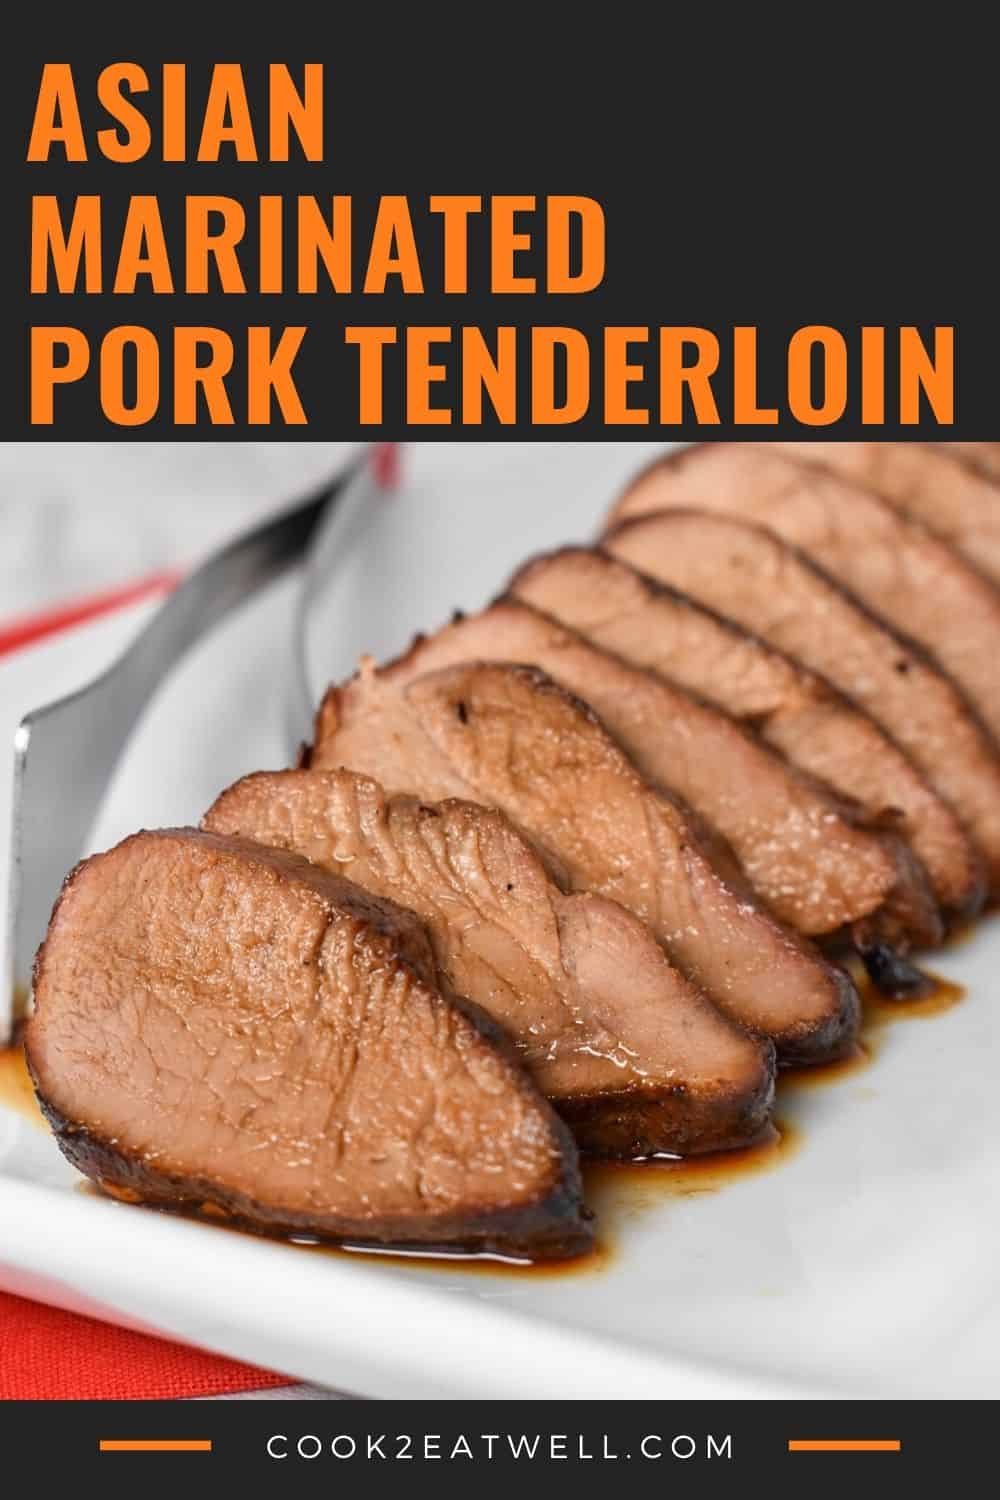 Asian Pork Tenderloin - Cook2eatwell